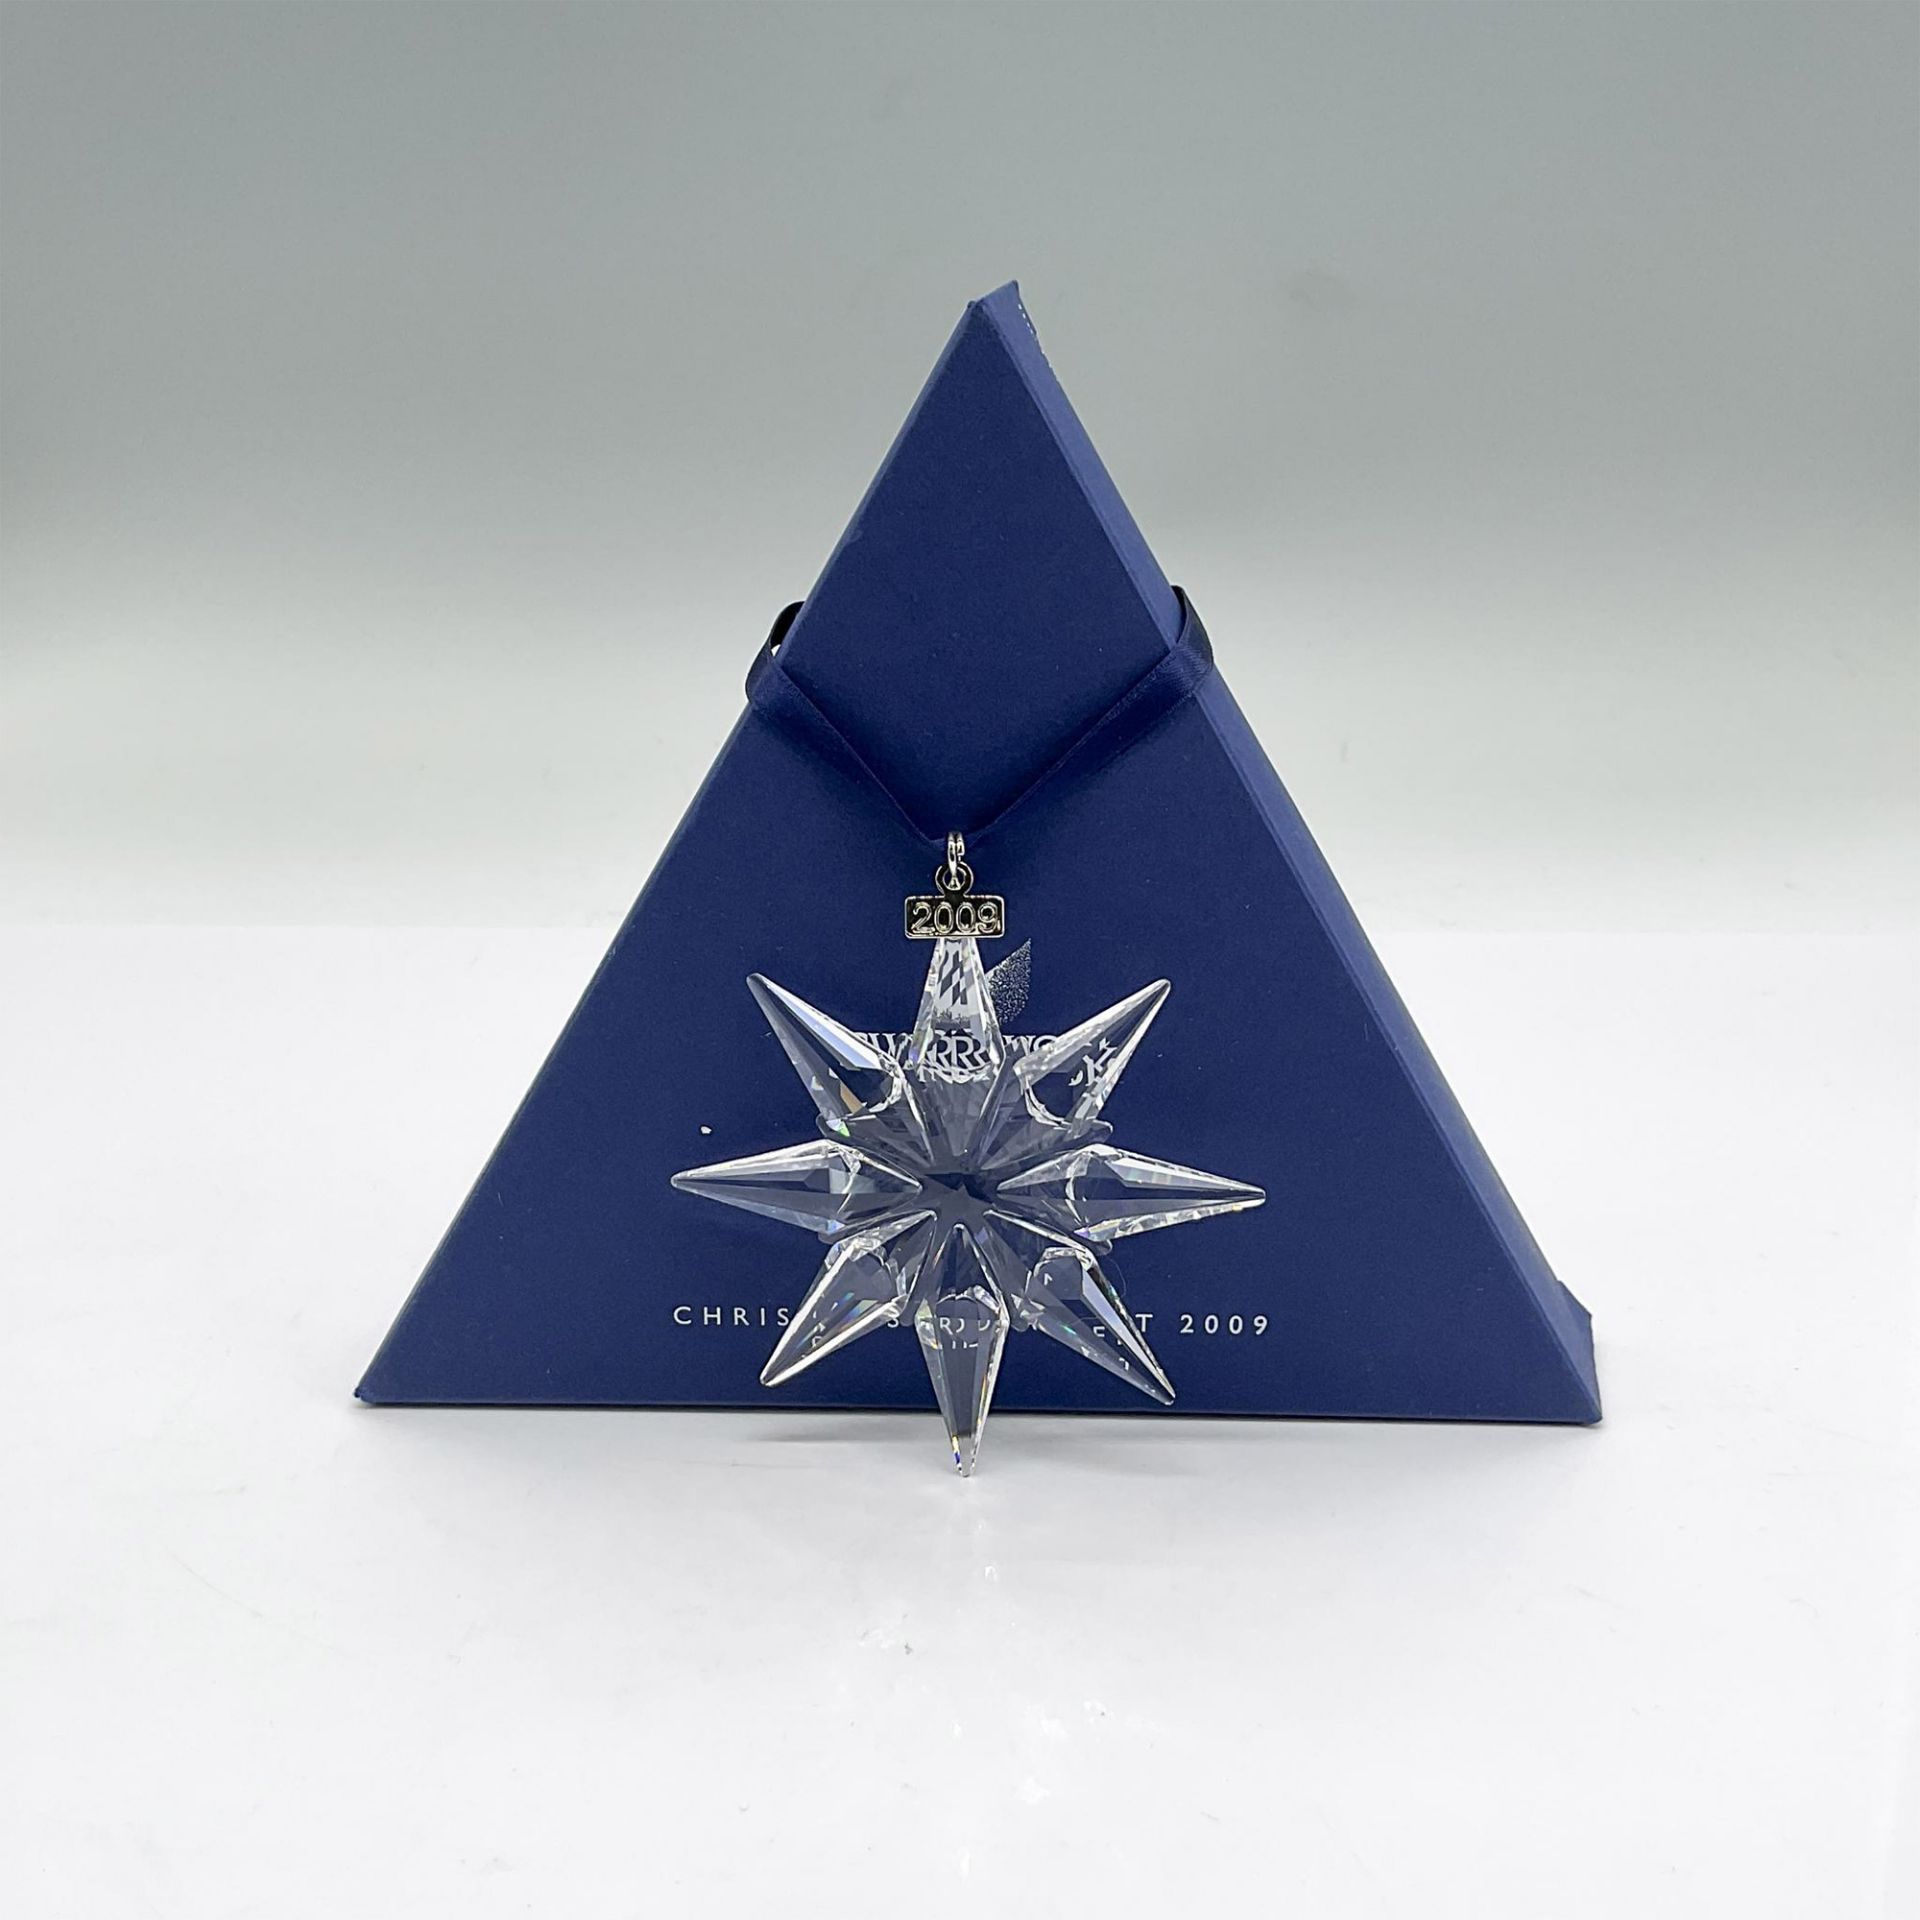 Swarovski Crystal Christmas Ornament 2009 - Image 3 of 3